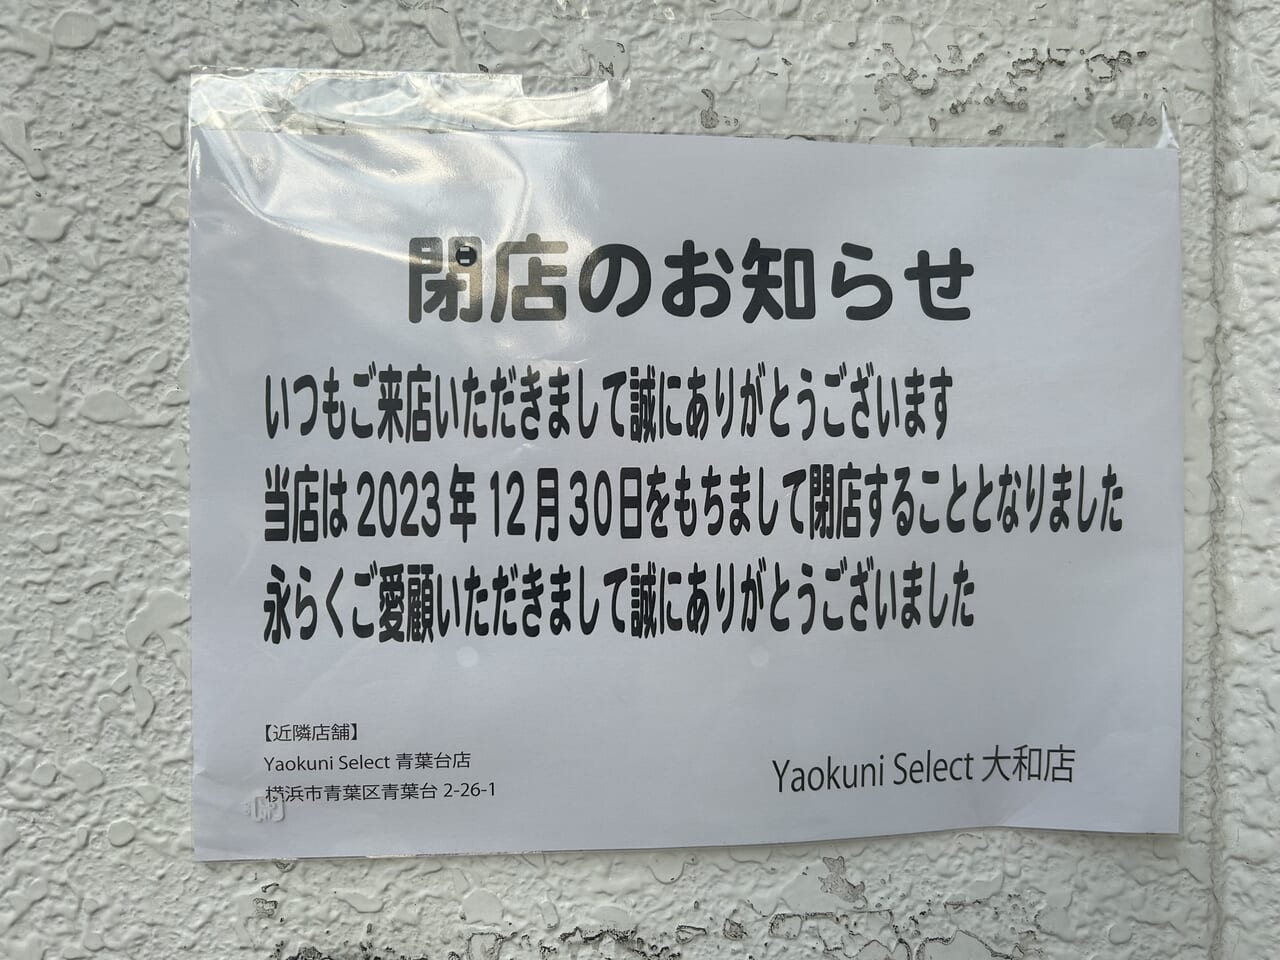 Yaokuni Select大和本店の閉店のお知らせ